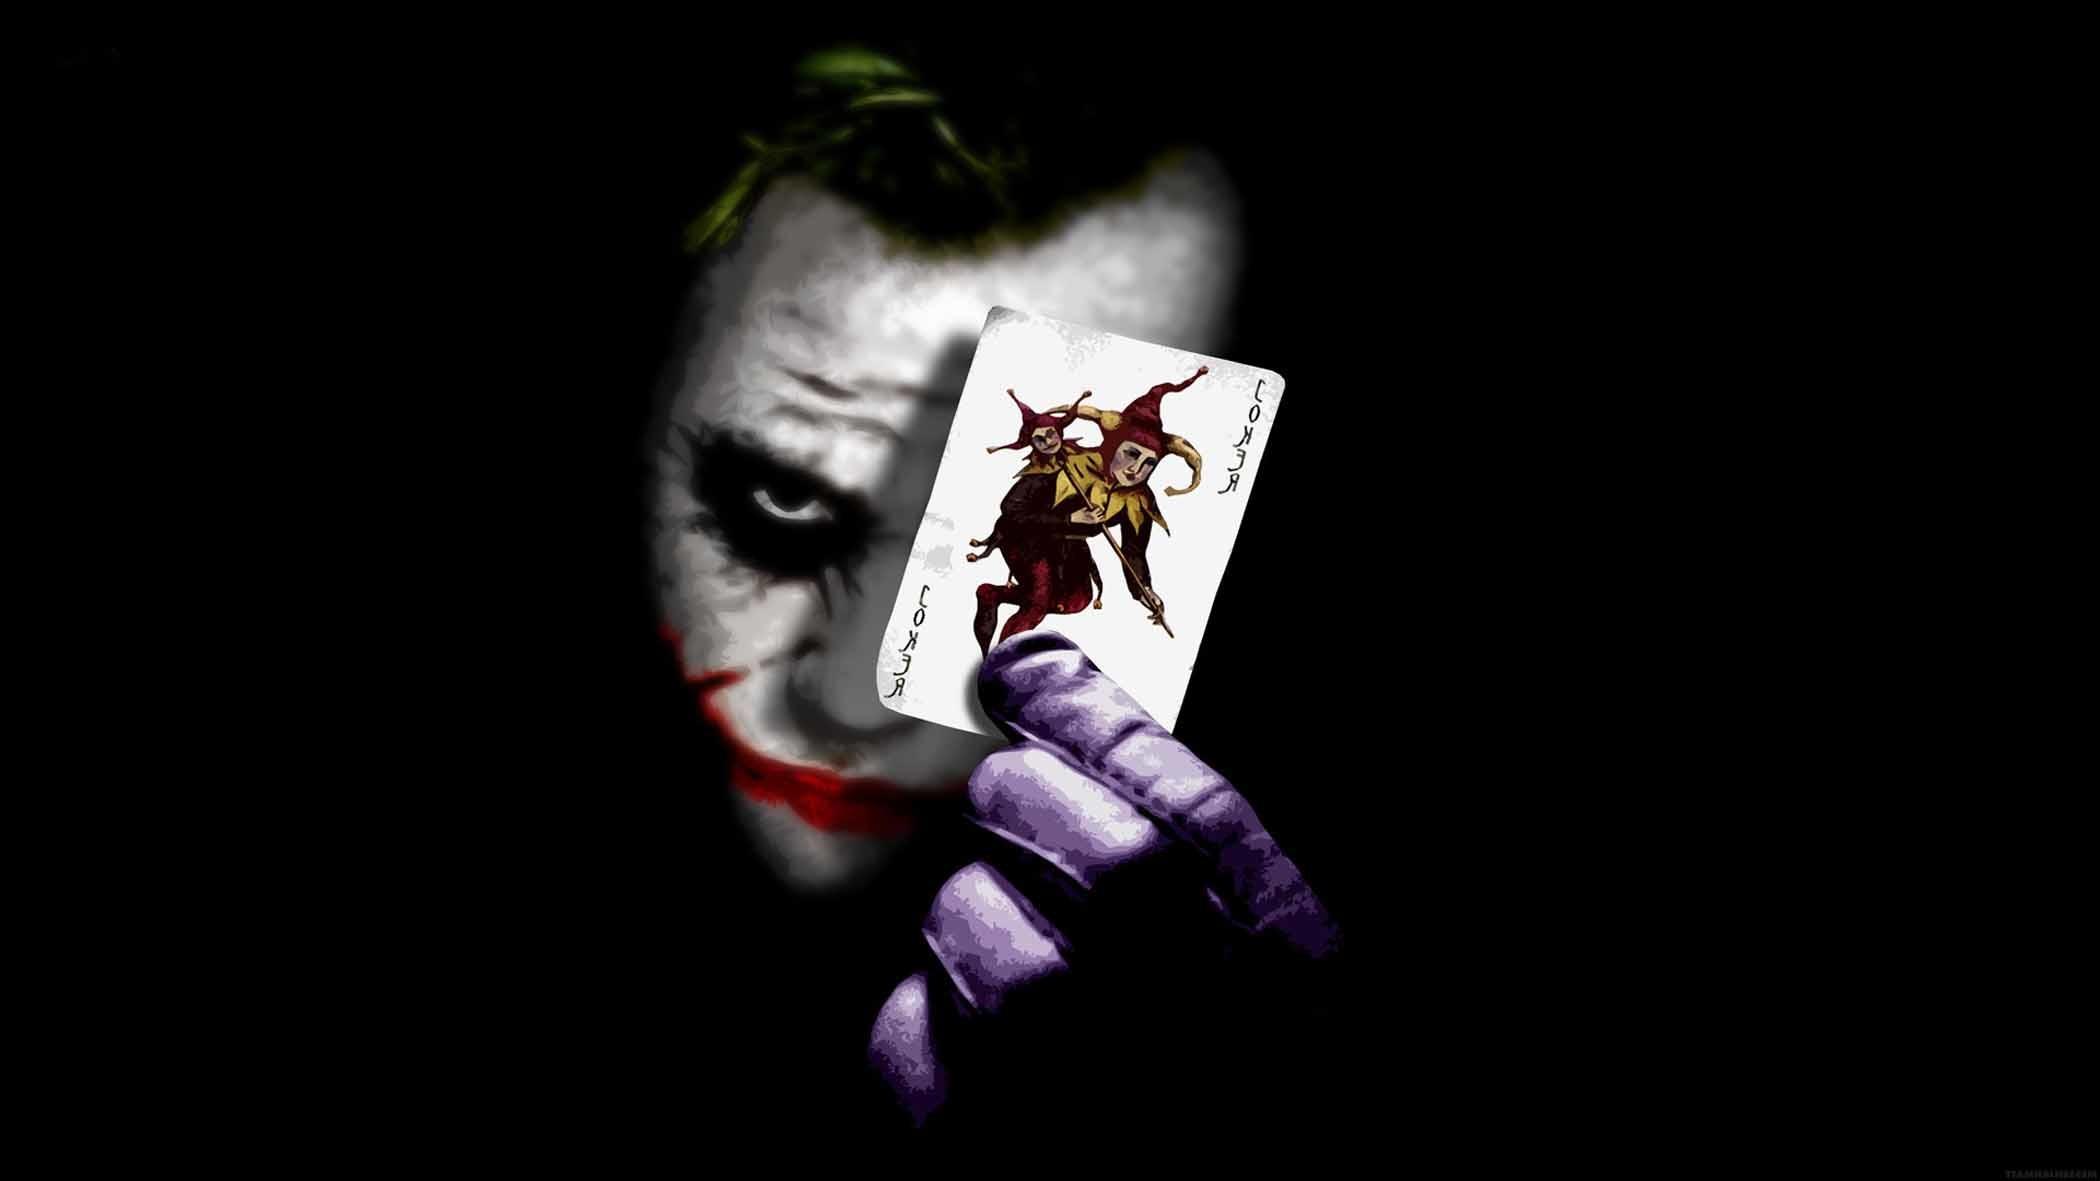 Joker Wallpaper Dark Knight